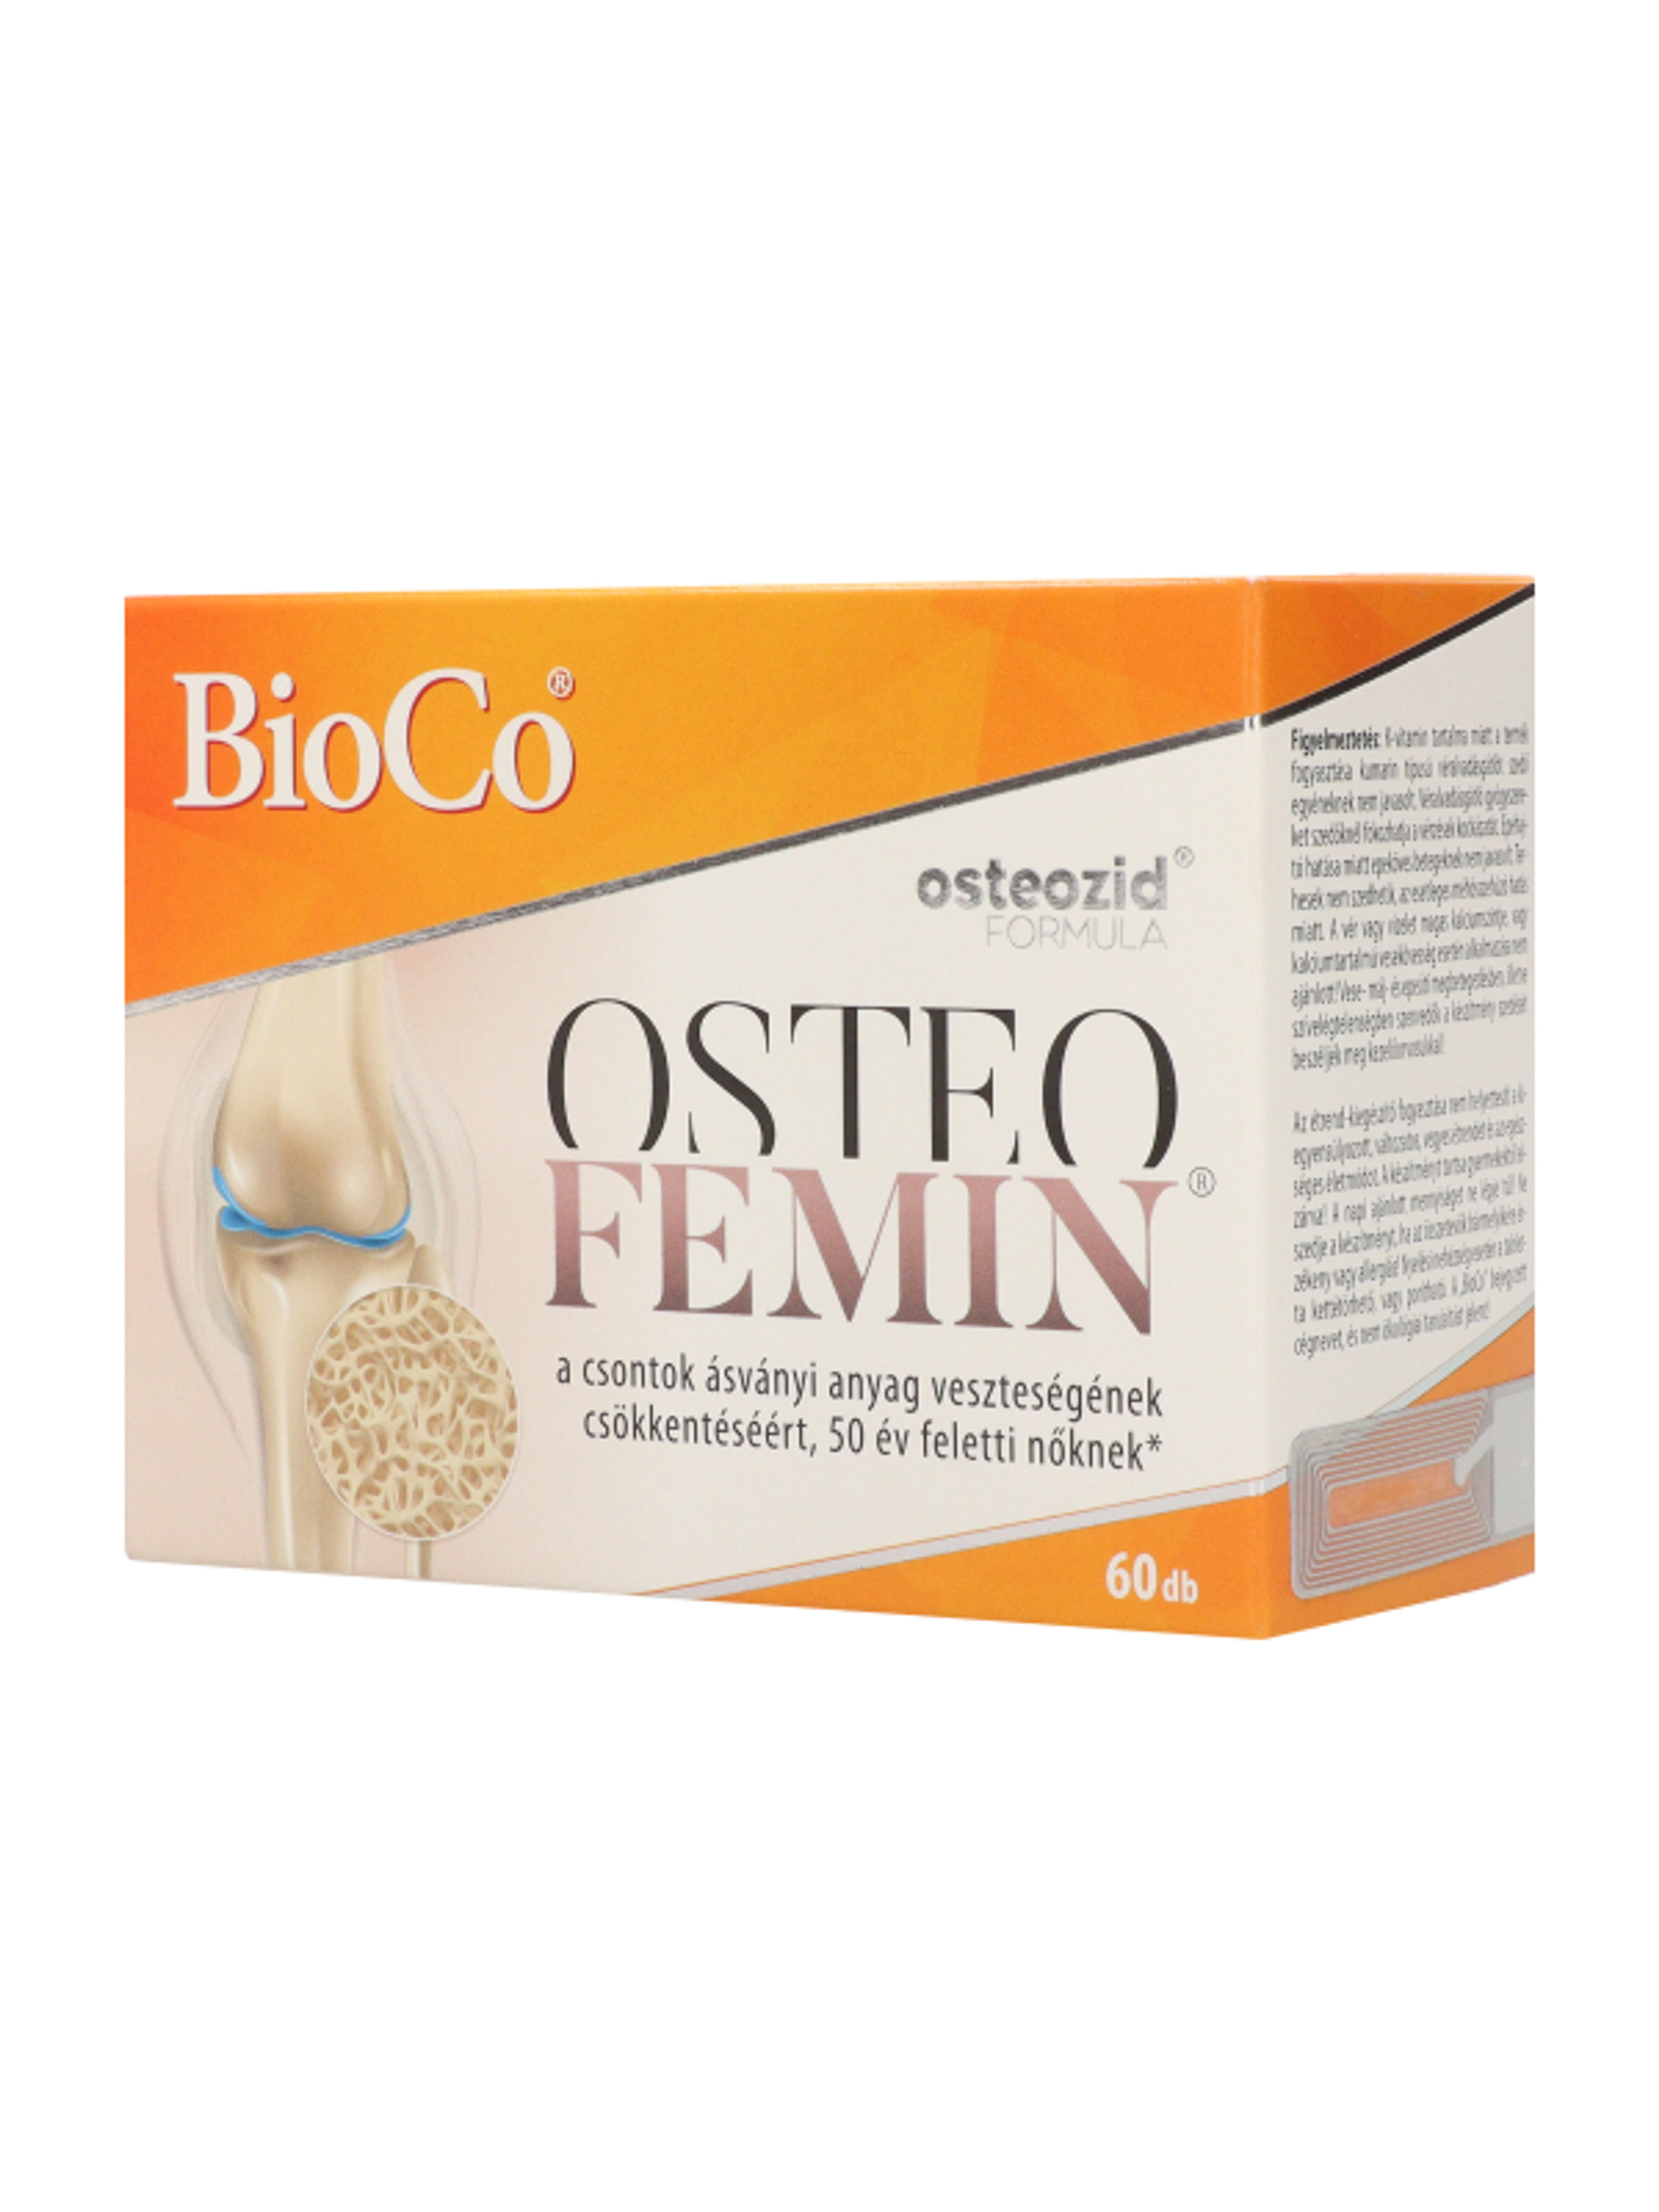 Bioco osteofemin filmtabletta - 60 db-5